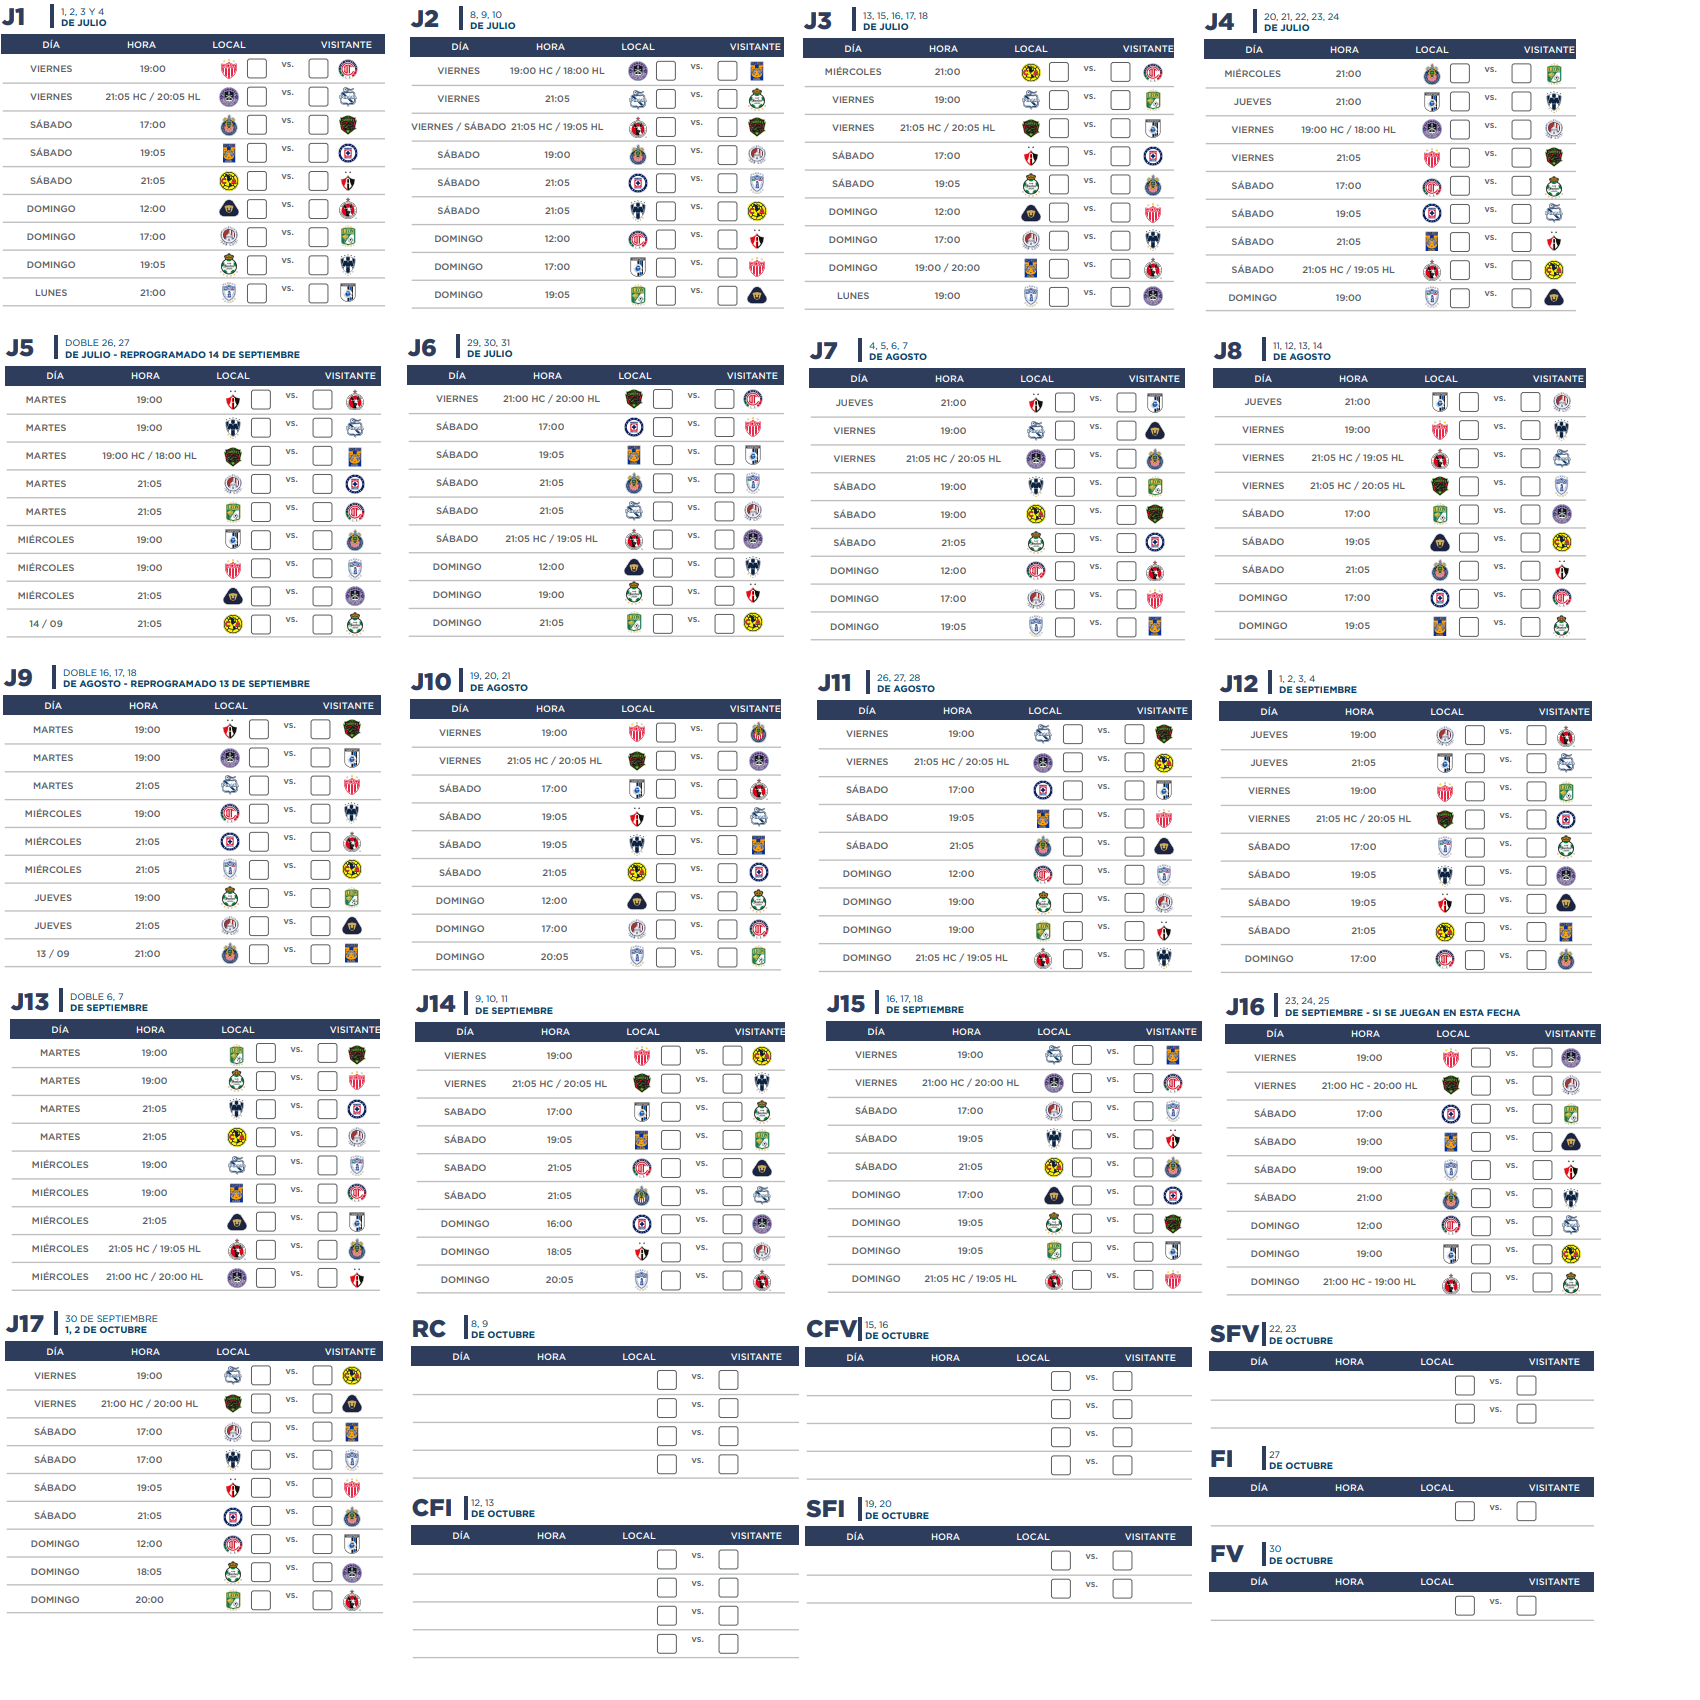 Calendario de partidos de la Liguilla del fútbol mexicano Apertura 2012  Liga MX